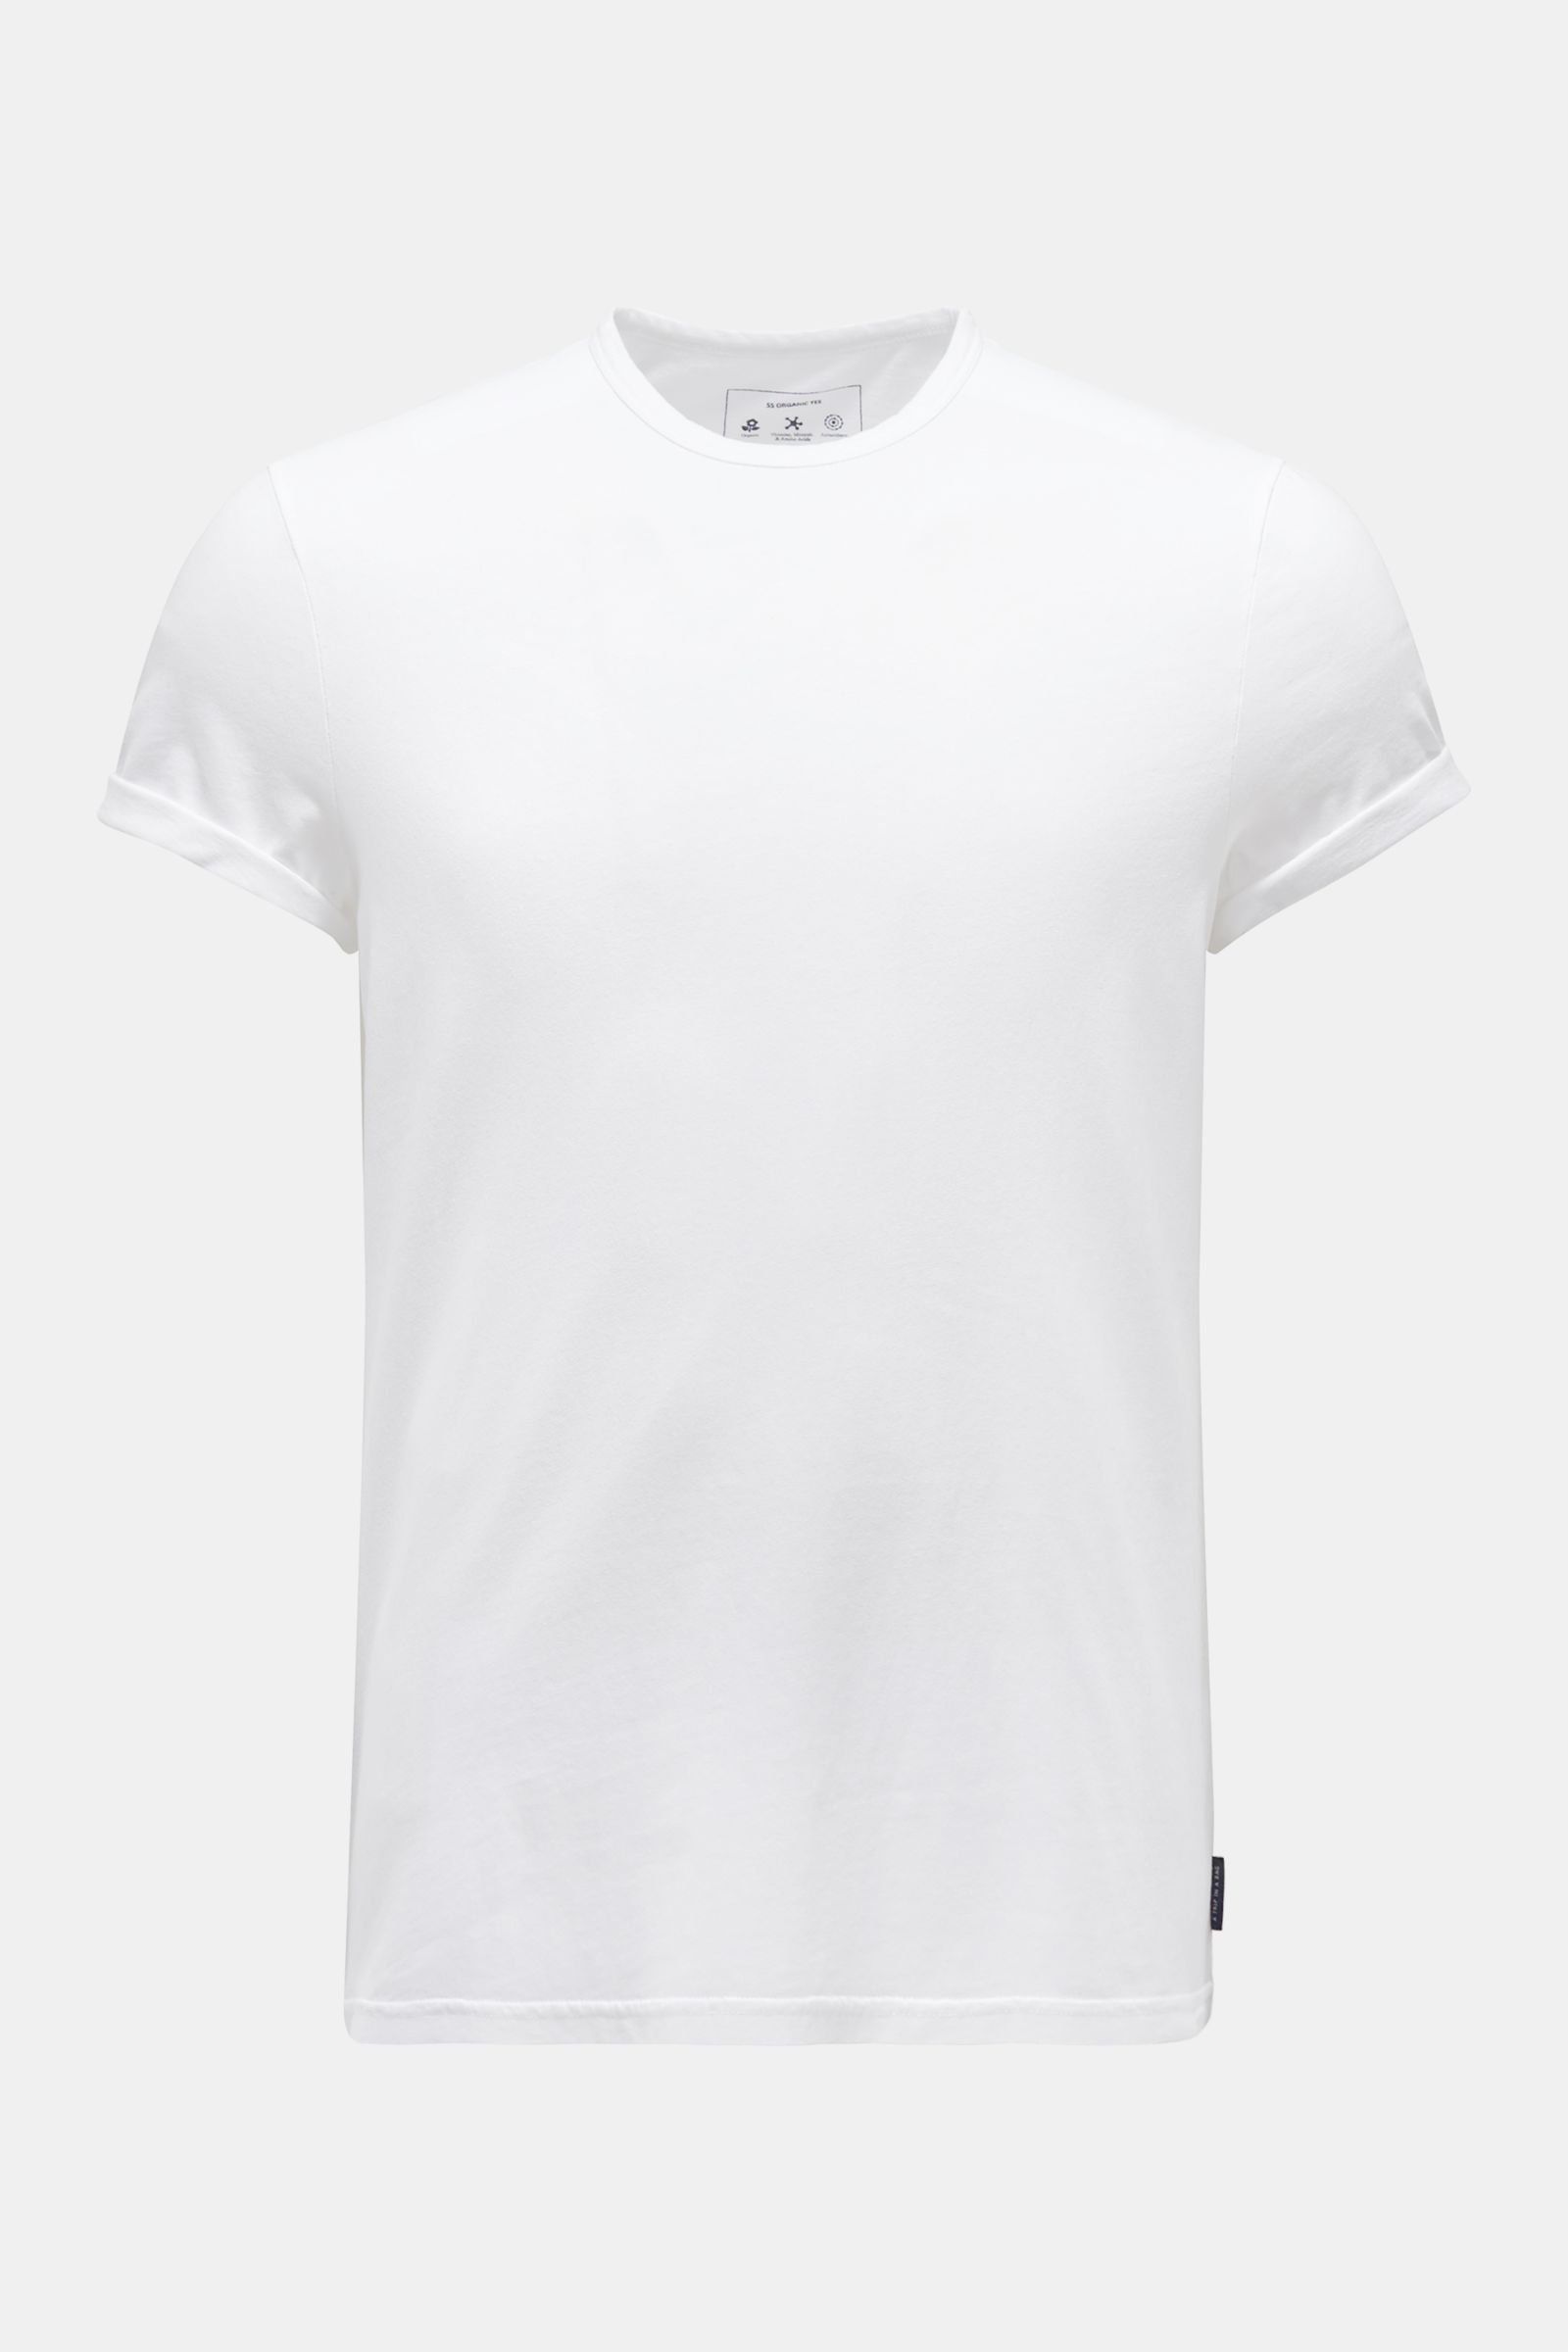 Crew neck T-shirt 'Organic Tee' white